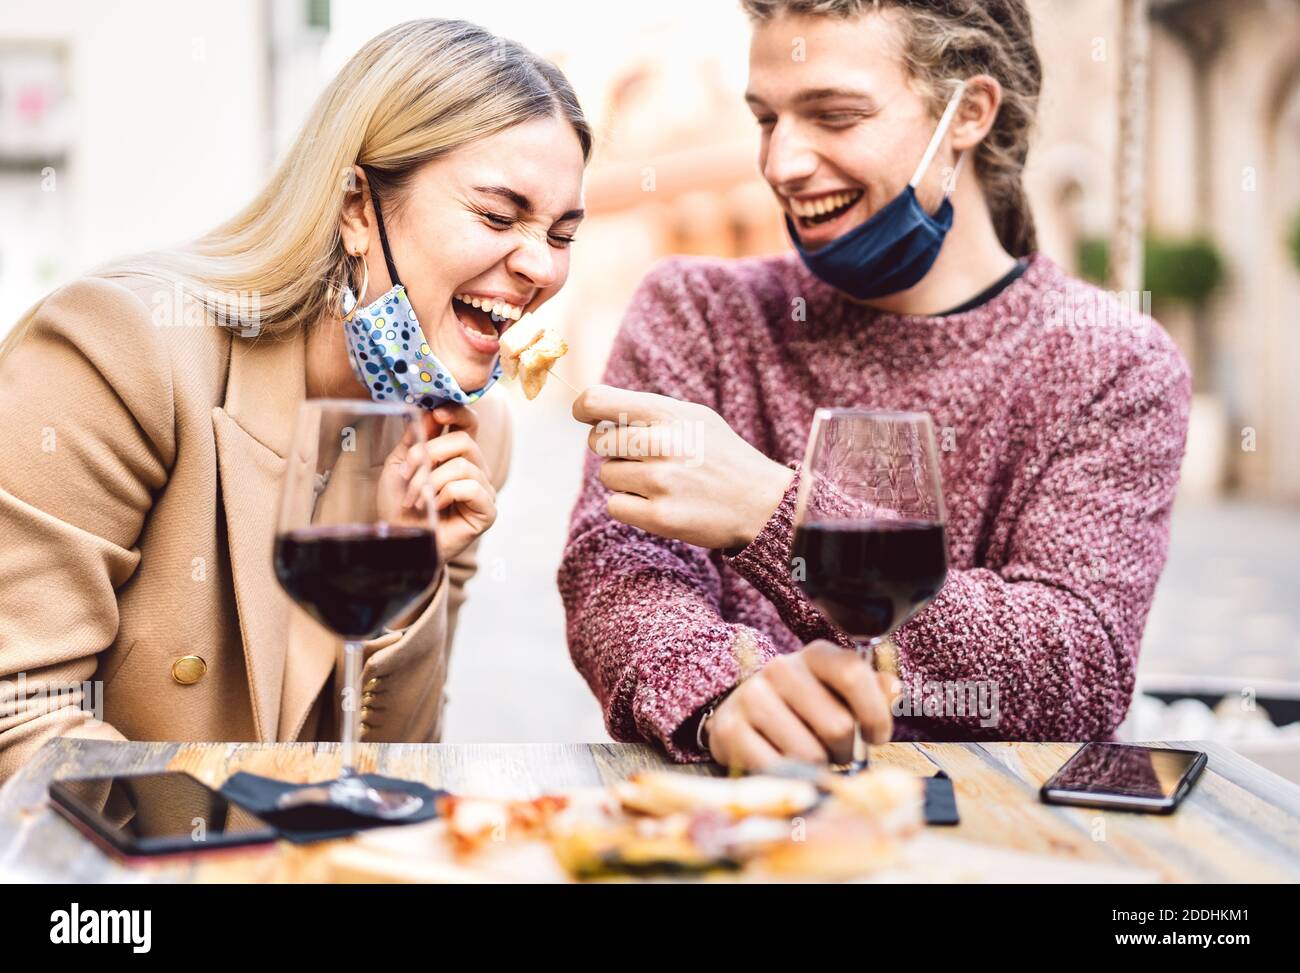 Junges Paar in der Liebe tragen offene Gesichtsmasken Spaß haben In der Weinbar im Freien - Glückliche Reisende Freunde genießen Mittagessen Gemeinsam im Restaurant Garten Stockfoto